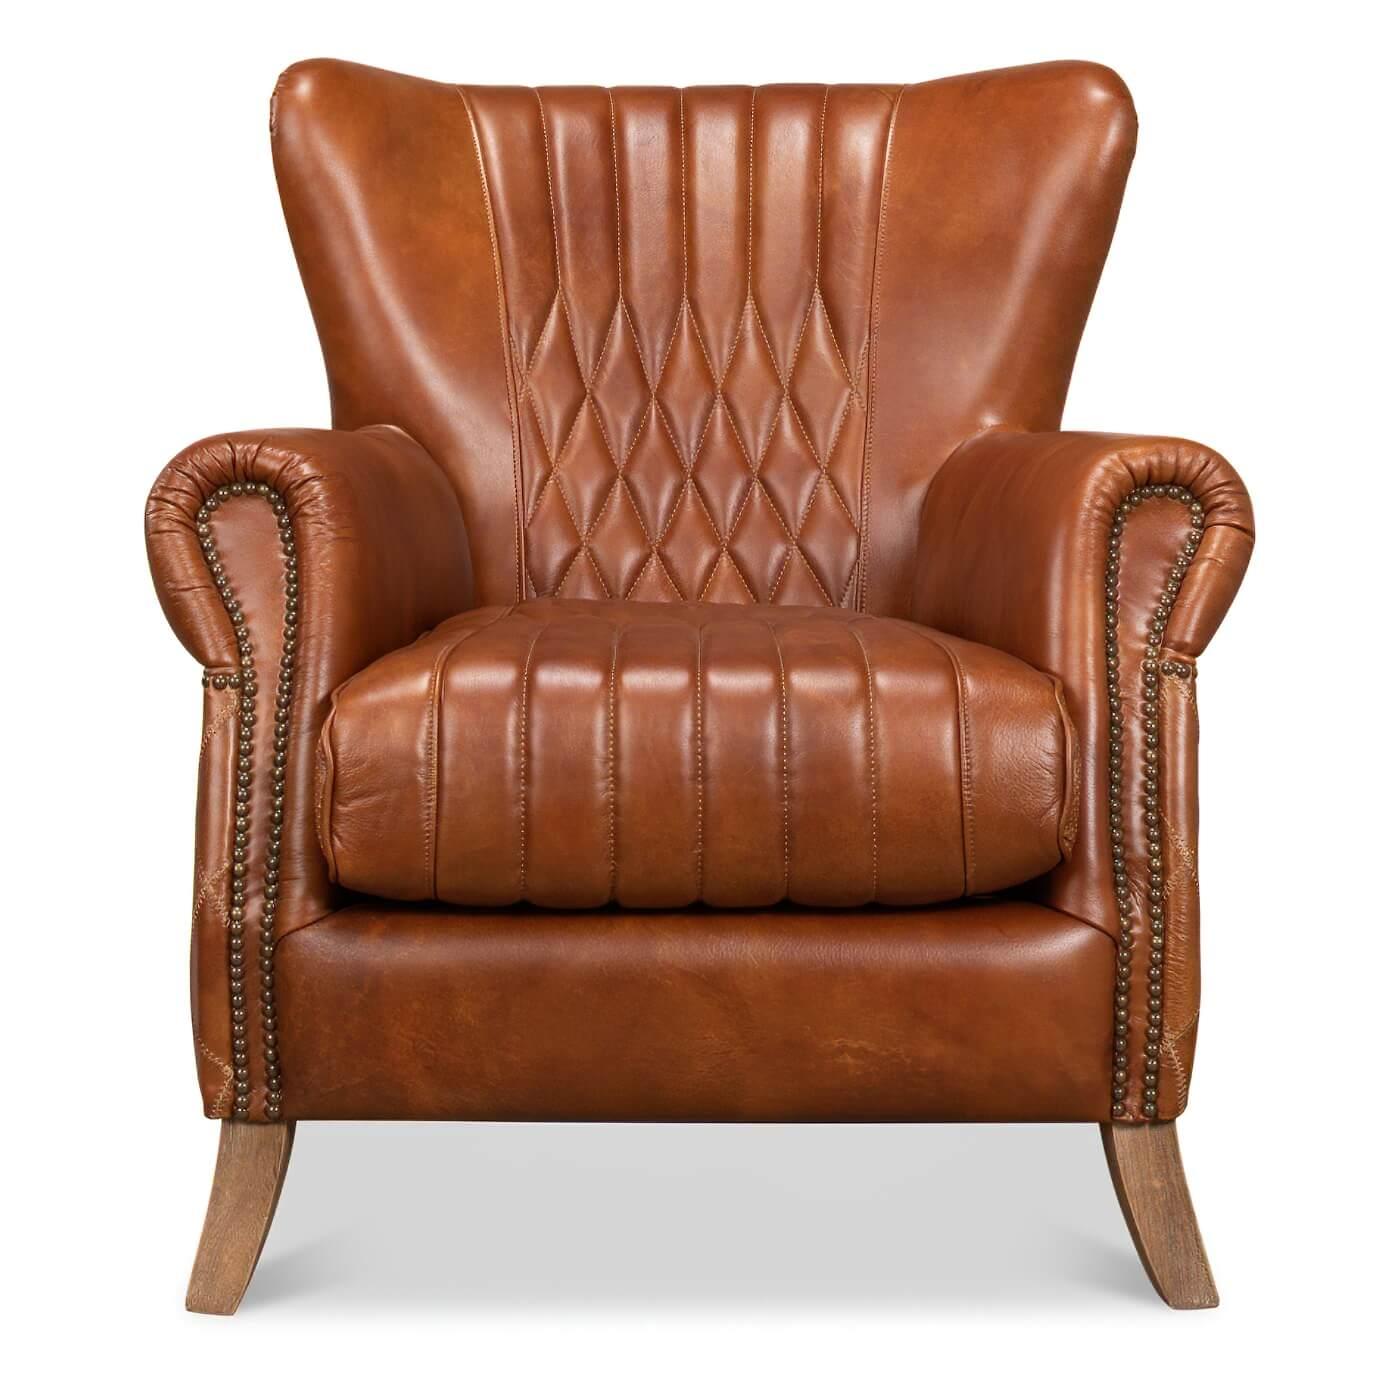 Ein klassischer, gesteppter Ledersessel mit Nagelkopfverzierungen. Dieser klassische Stuhl ist mit unserem braunen Leder Cuba gepolstert und verfügt über ein gestepptes Design auf der Innen- und Außenseite der Rückenlehne und der Seiten. Mit seinen